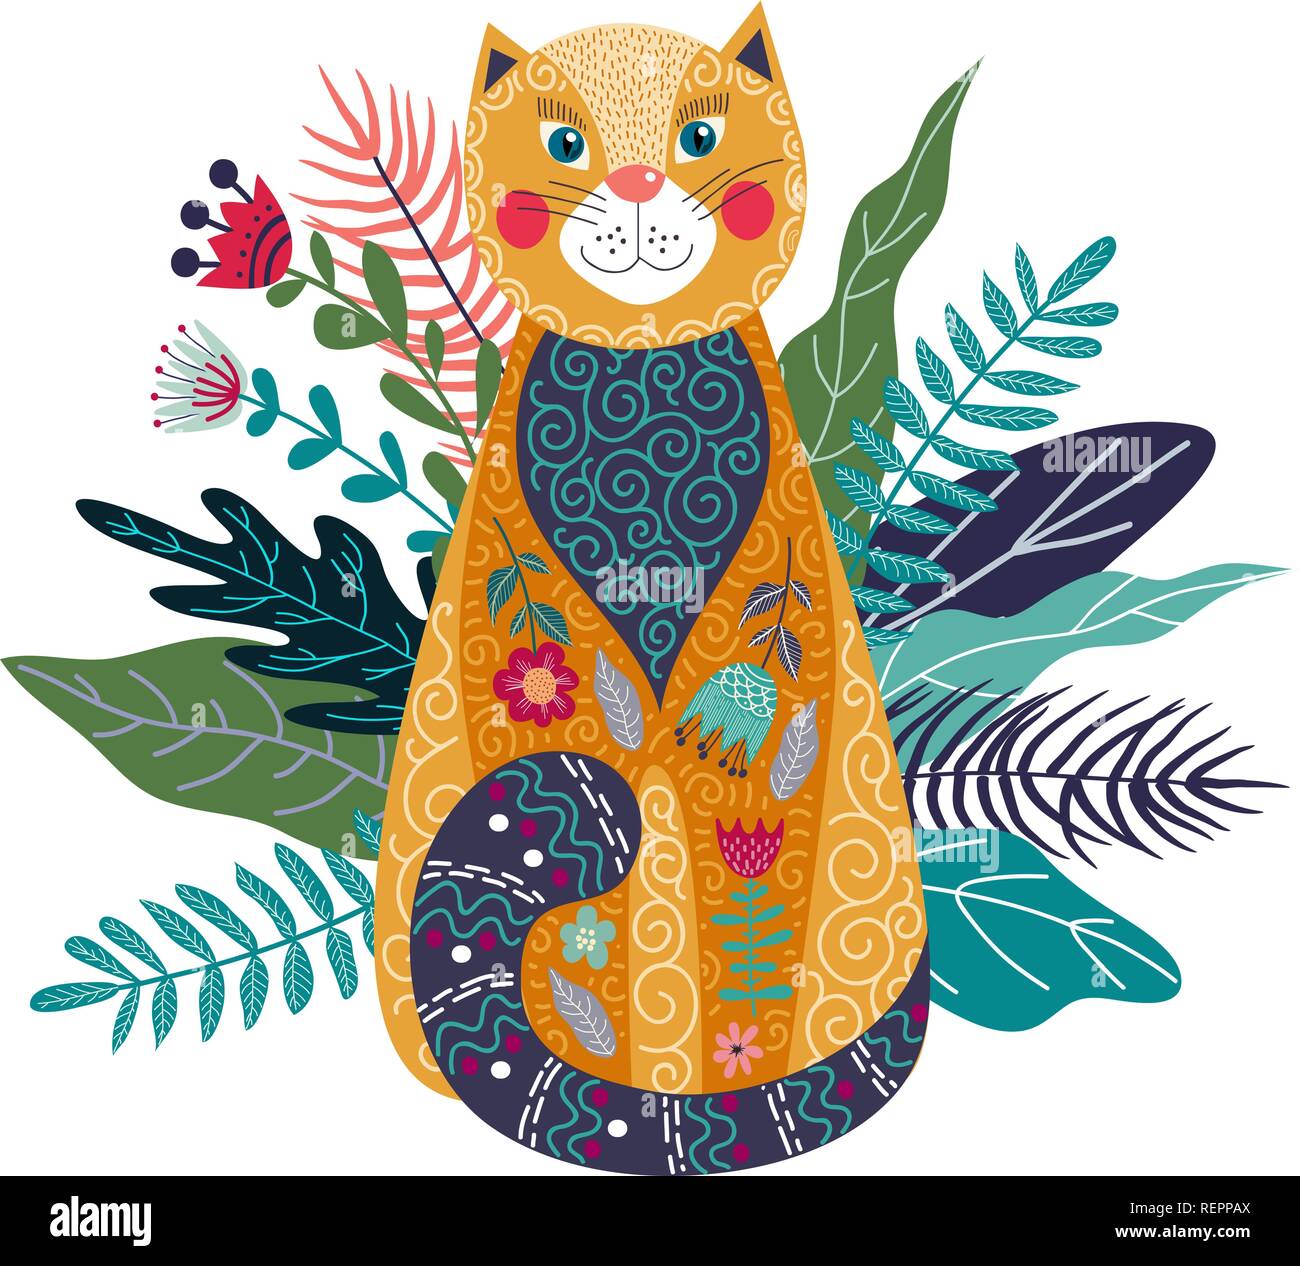 Vector Art illustration isolé colorés avec mignon chat de gingembre, de fleurs et d'herbe sur un fond blanc. Décoration d'art pour votre intérieur et pour u Illustration de Vecteur